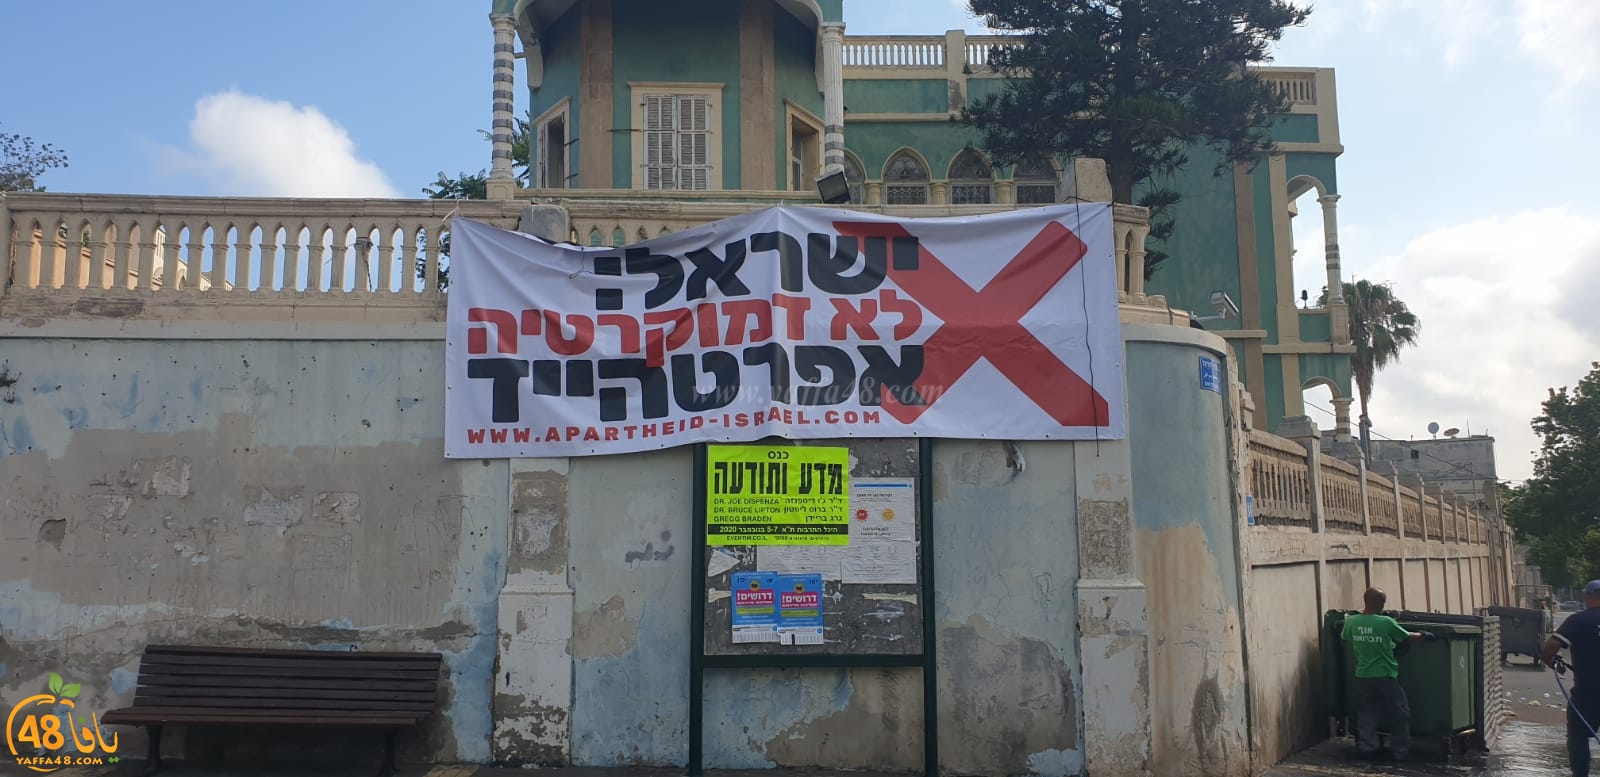  صور: لافتة وسط يافا اسرائيل ليست ديمقراطية، دولة ابرتهايد